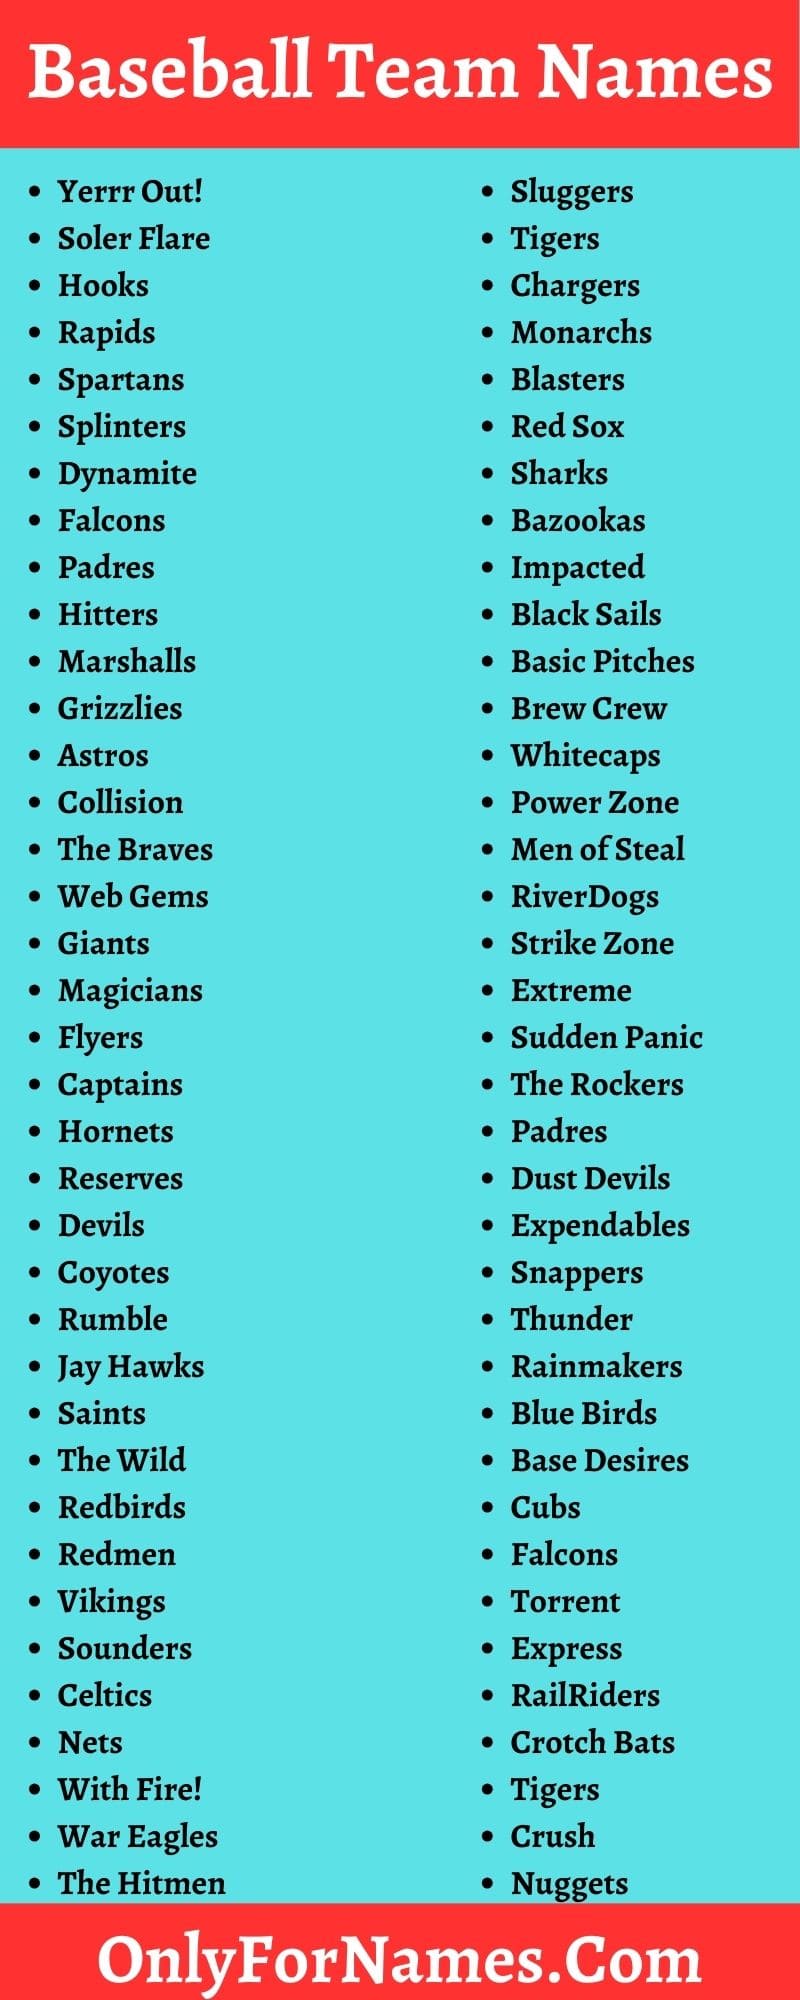 Baseball Team Names